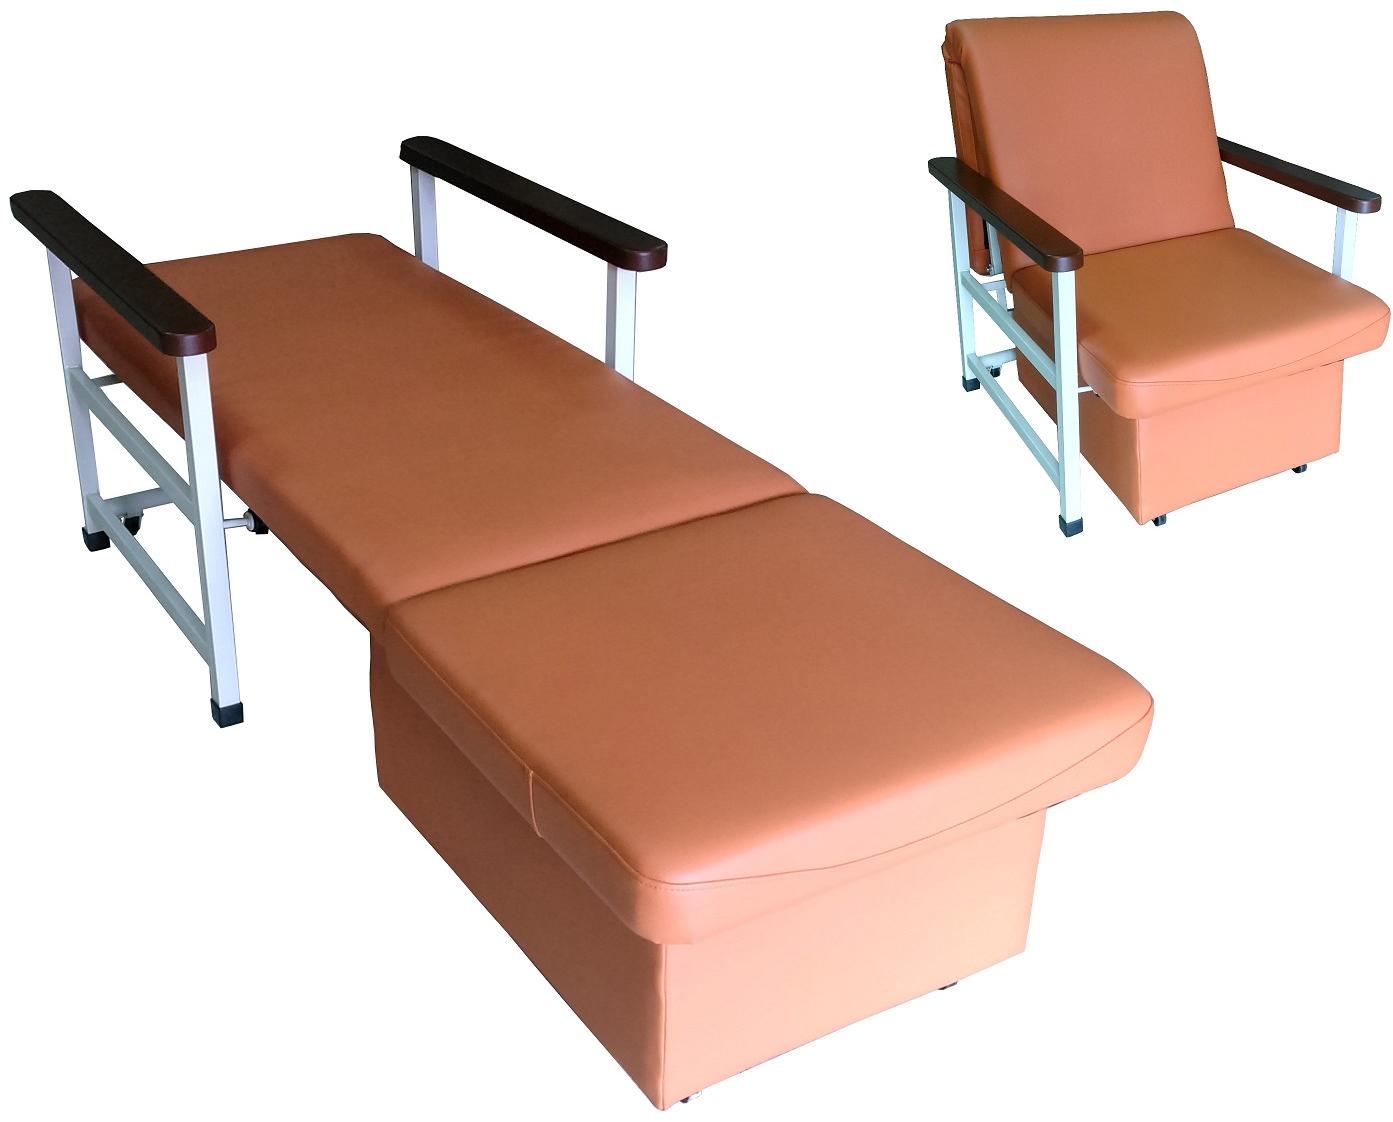 медицинское кресло кровать м182 02